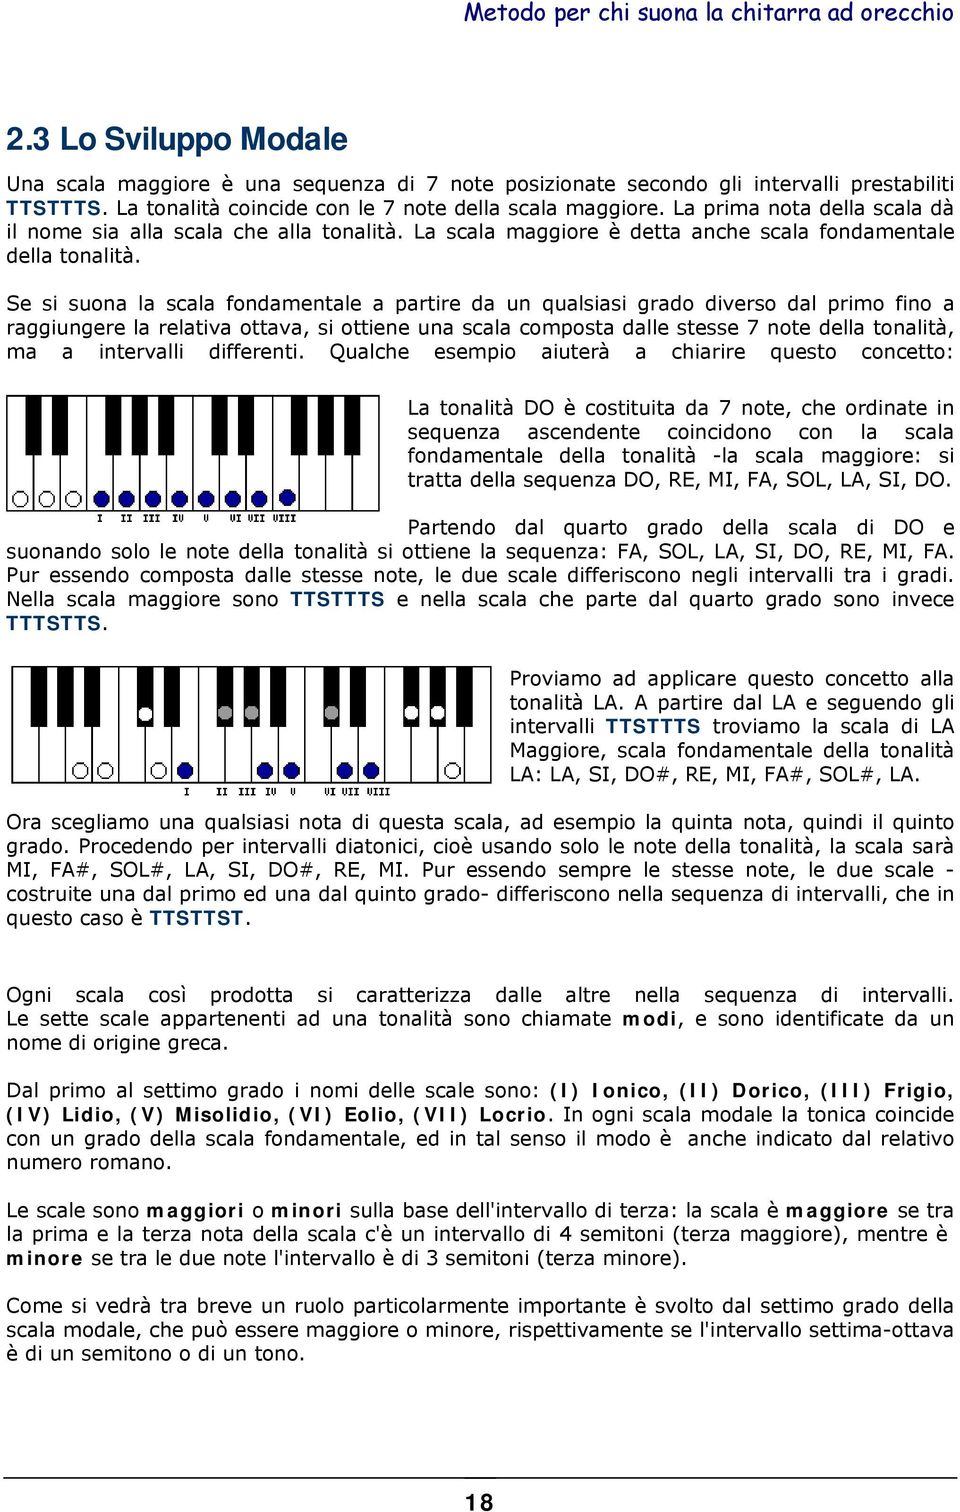 Se si suona la scala fondamentale a partire da un qualsiasi grado diverso dal primo fino a raggiungere la relativa ottava, si ottiene una scala composta dalle stesse 7 note della tonalità, ma a